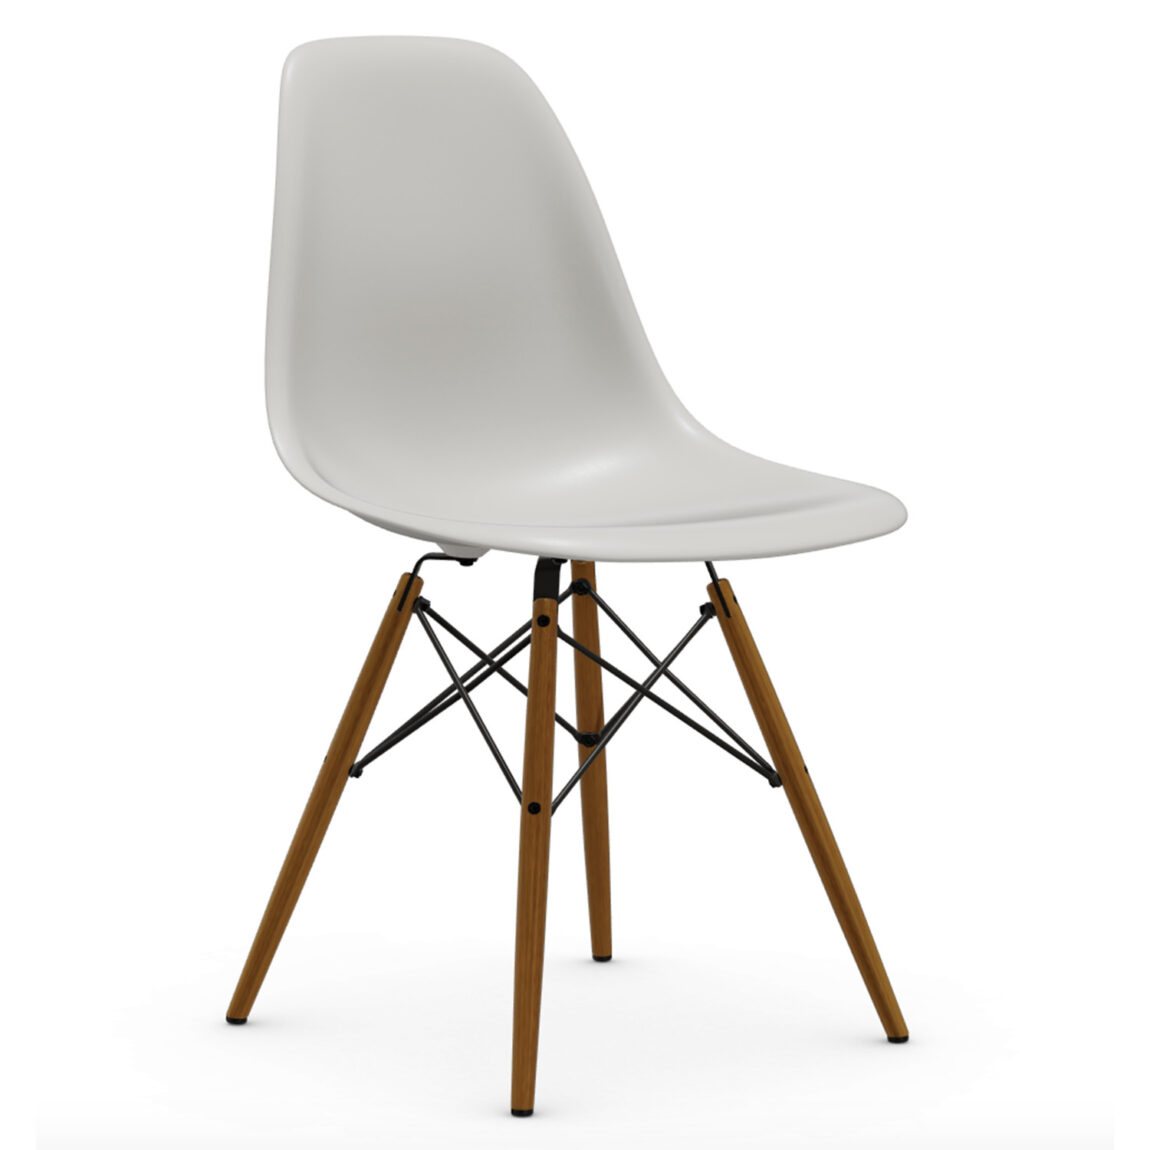 Výprodej Vitra designové židle DSW-skořepina bílá